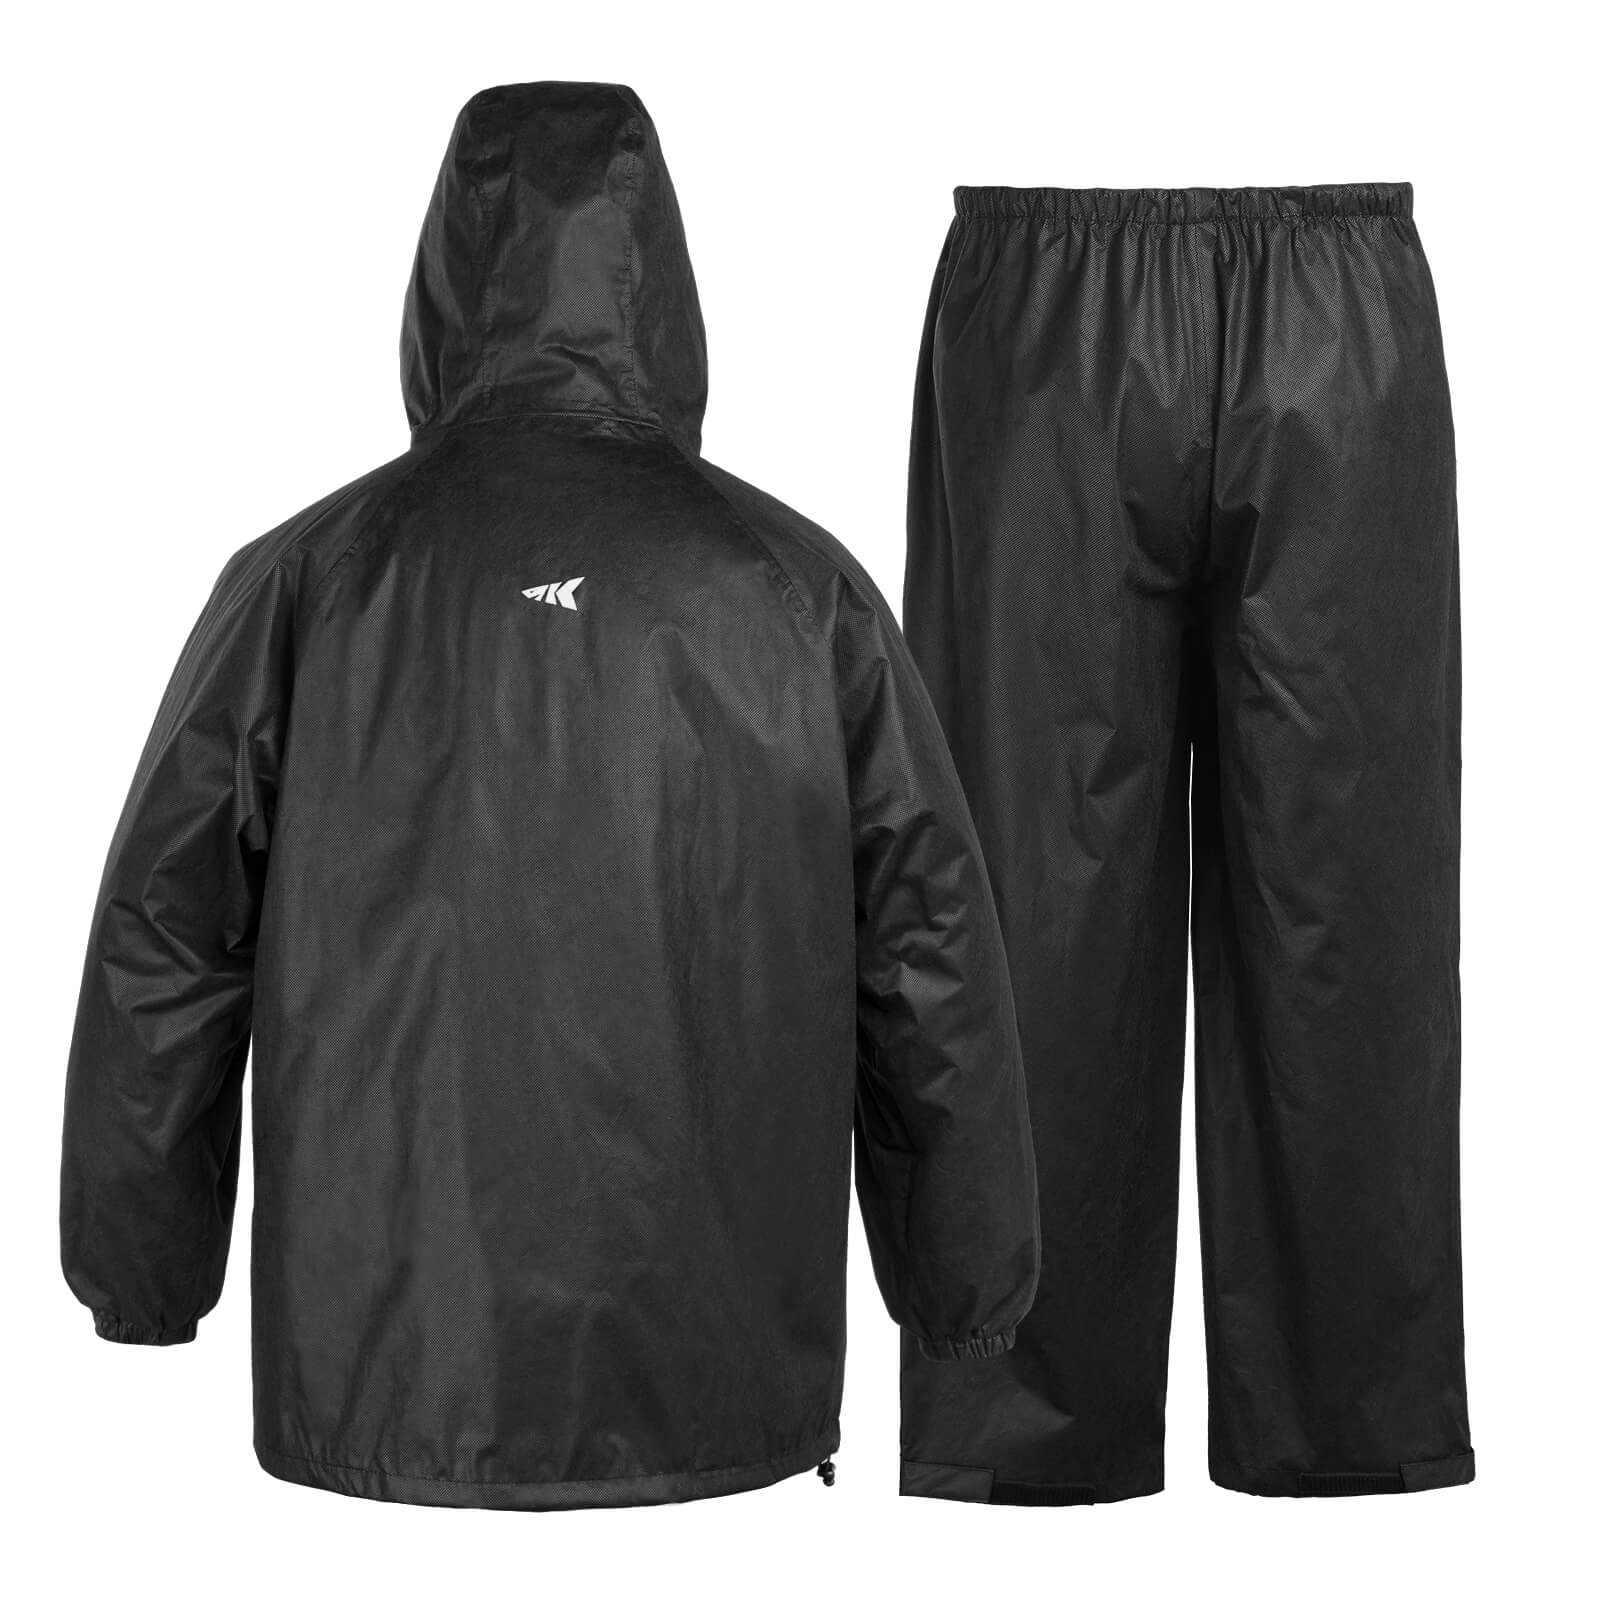 KastKing AquaLite Rain Suit, Waterproof Breathable Lightweight Rainwea